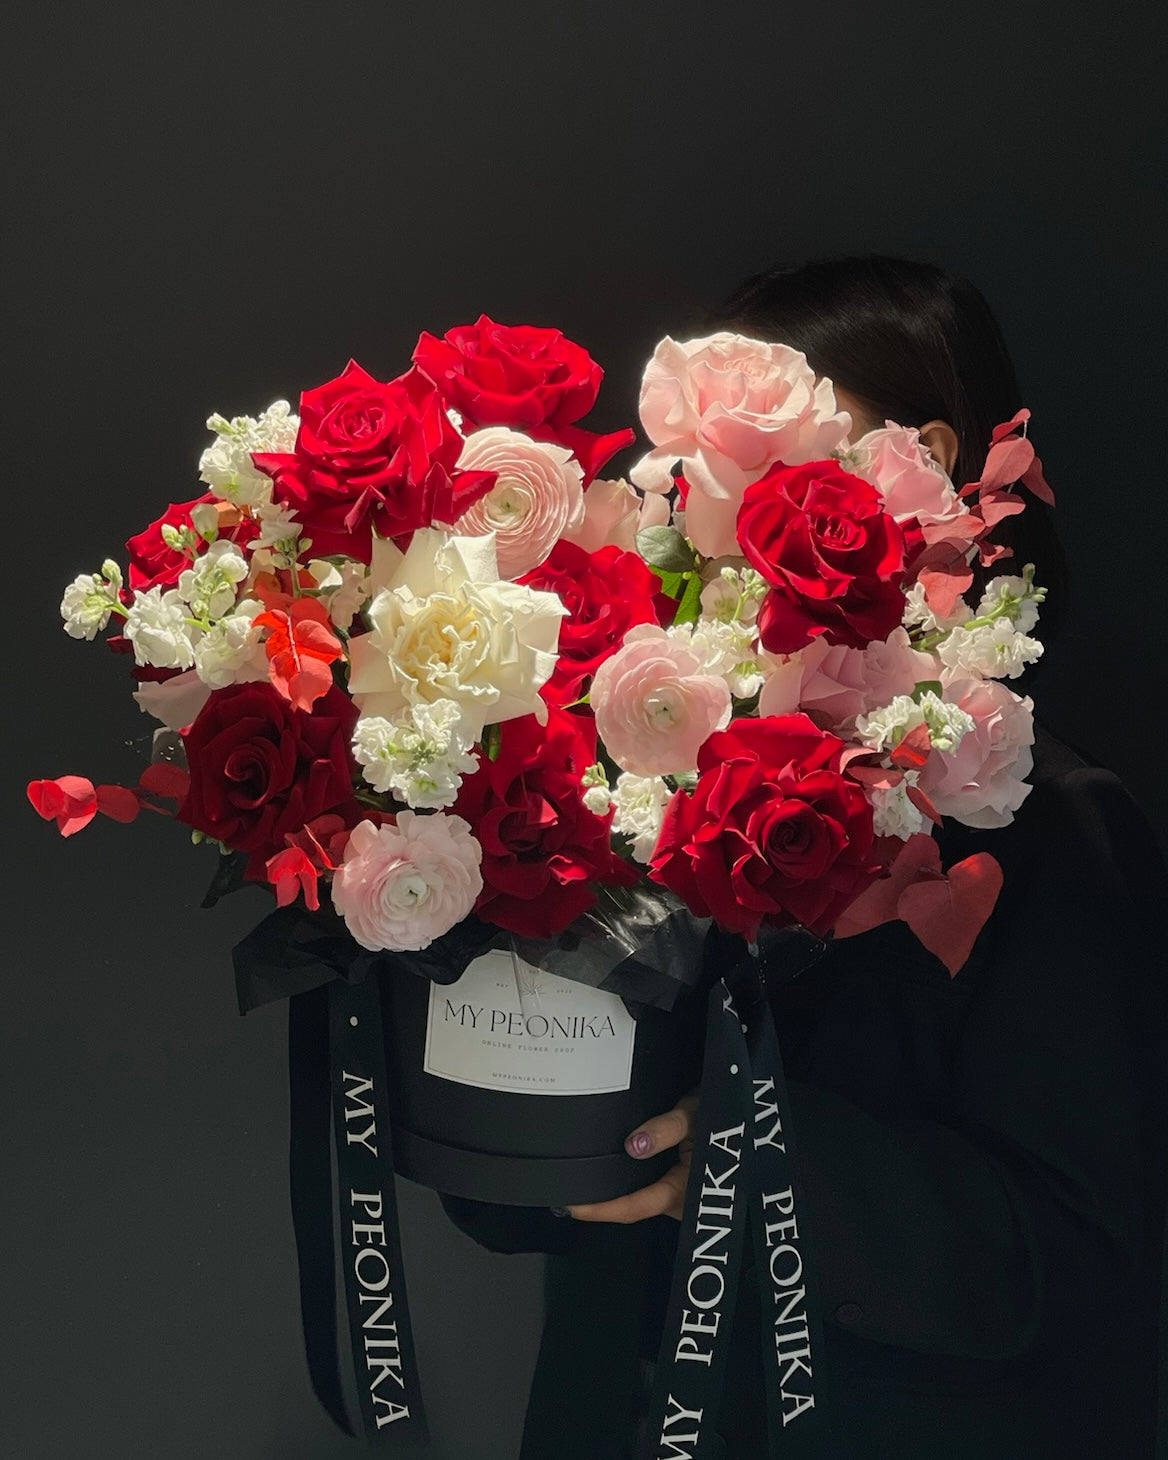 Flower box “Cherry Bomb” - roses, ranunculuses